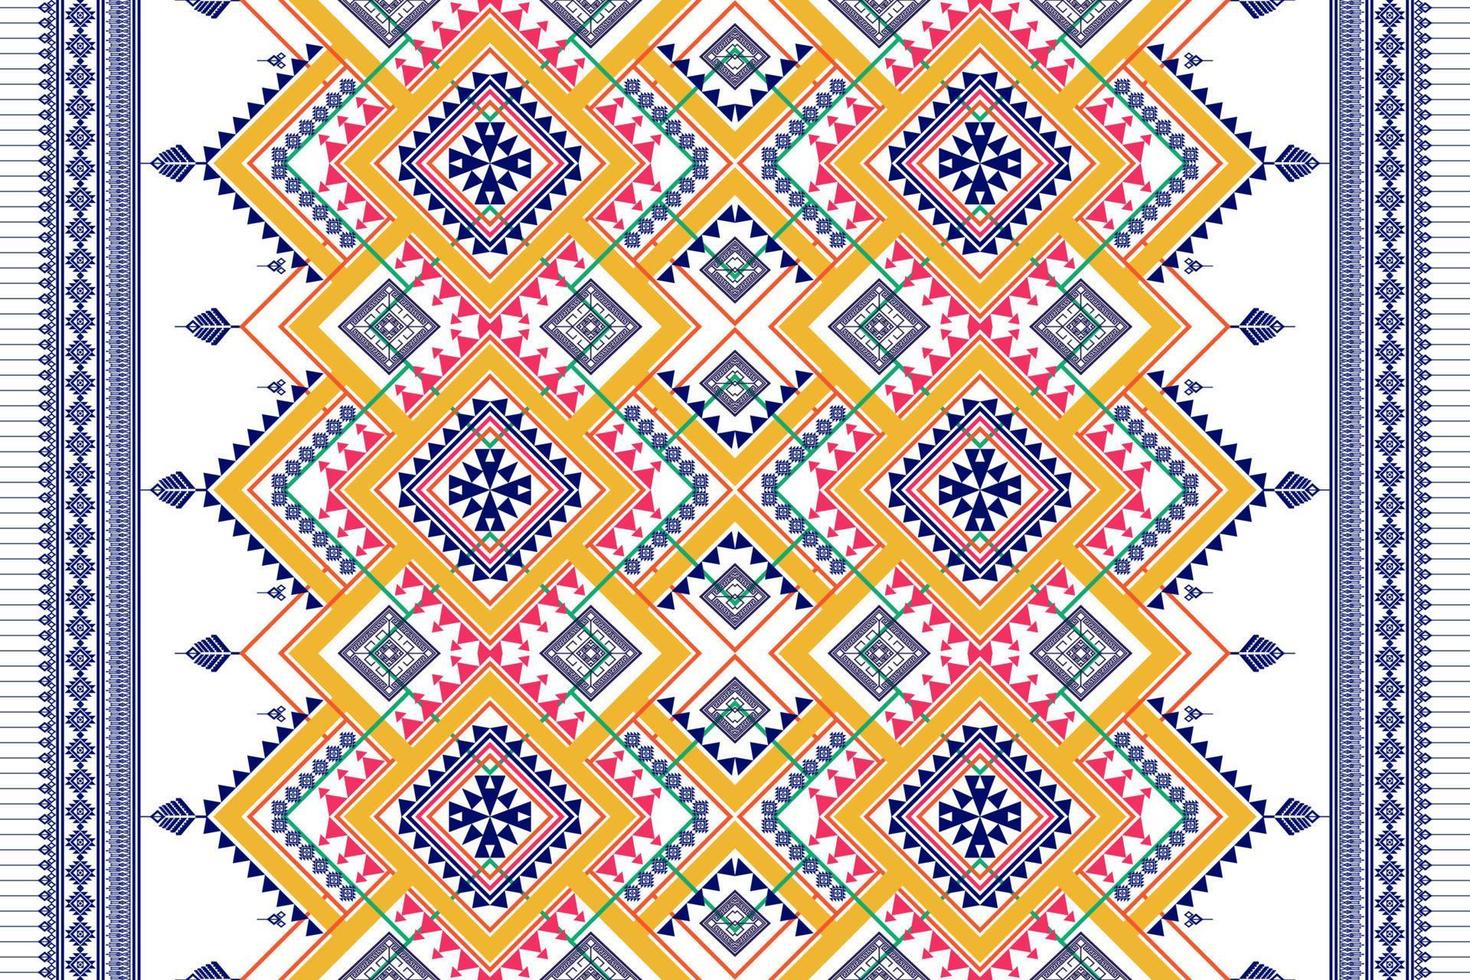 geometrisch etnisch naadloos patroonontwerp. Azteekse stof tapijt mandala ornament chevron textiel decoratie behang. tribal turkije afrikaanse indische traditionele borduurwerk ornament achtergrond vector